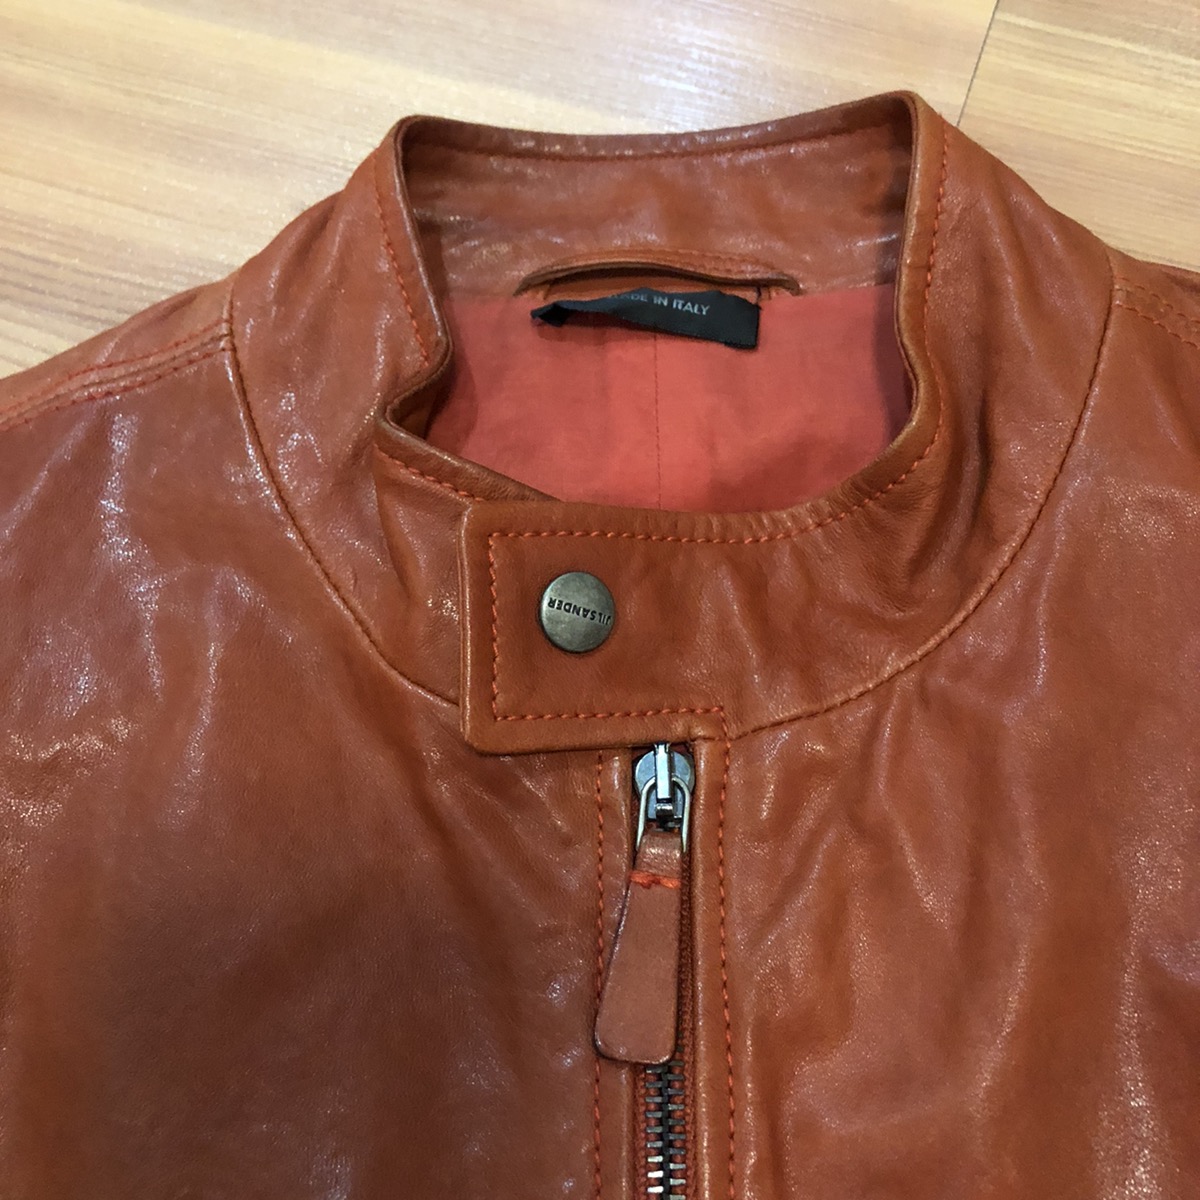 Hedi Slimane era Soft leather jacket - 3